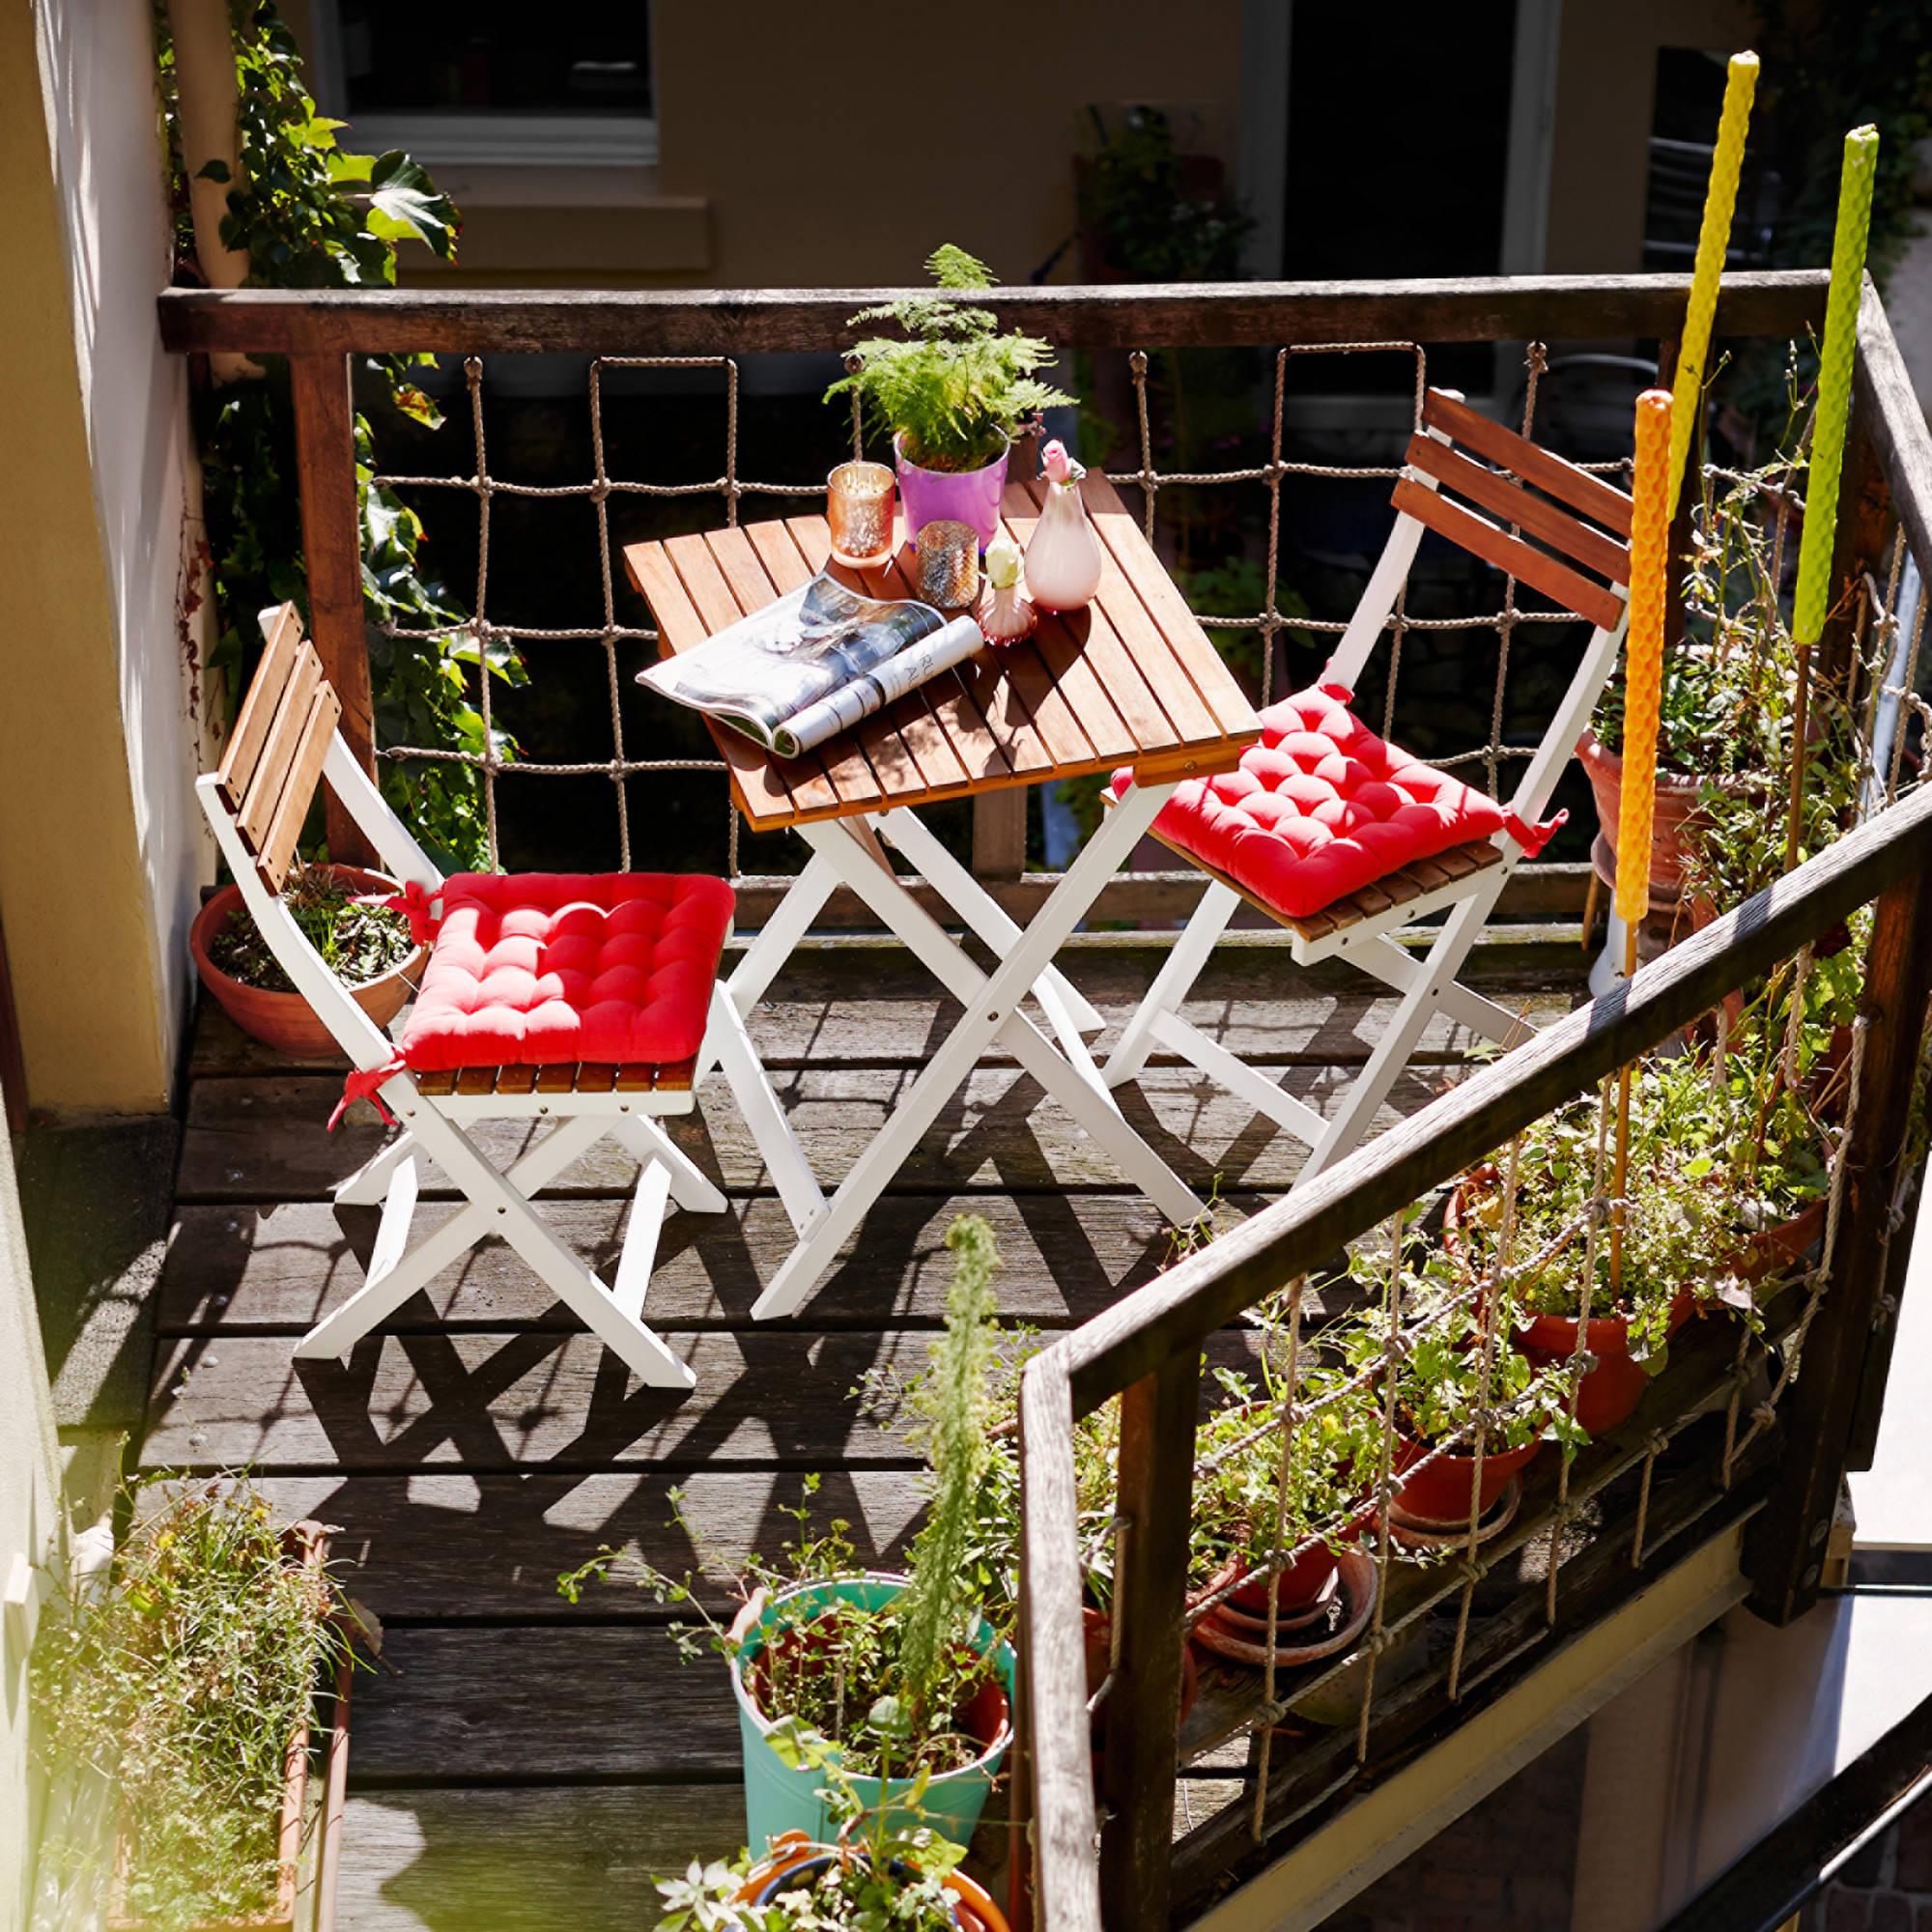 Möbel für kleine Balkone von Butlers #balkonmöbel ©Butlers